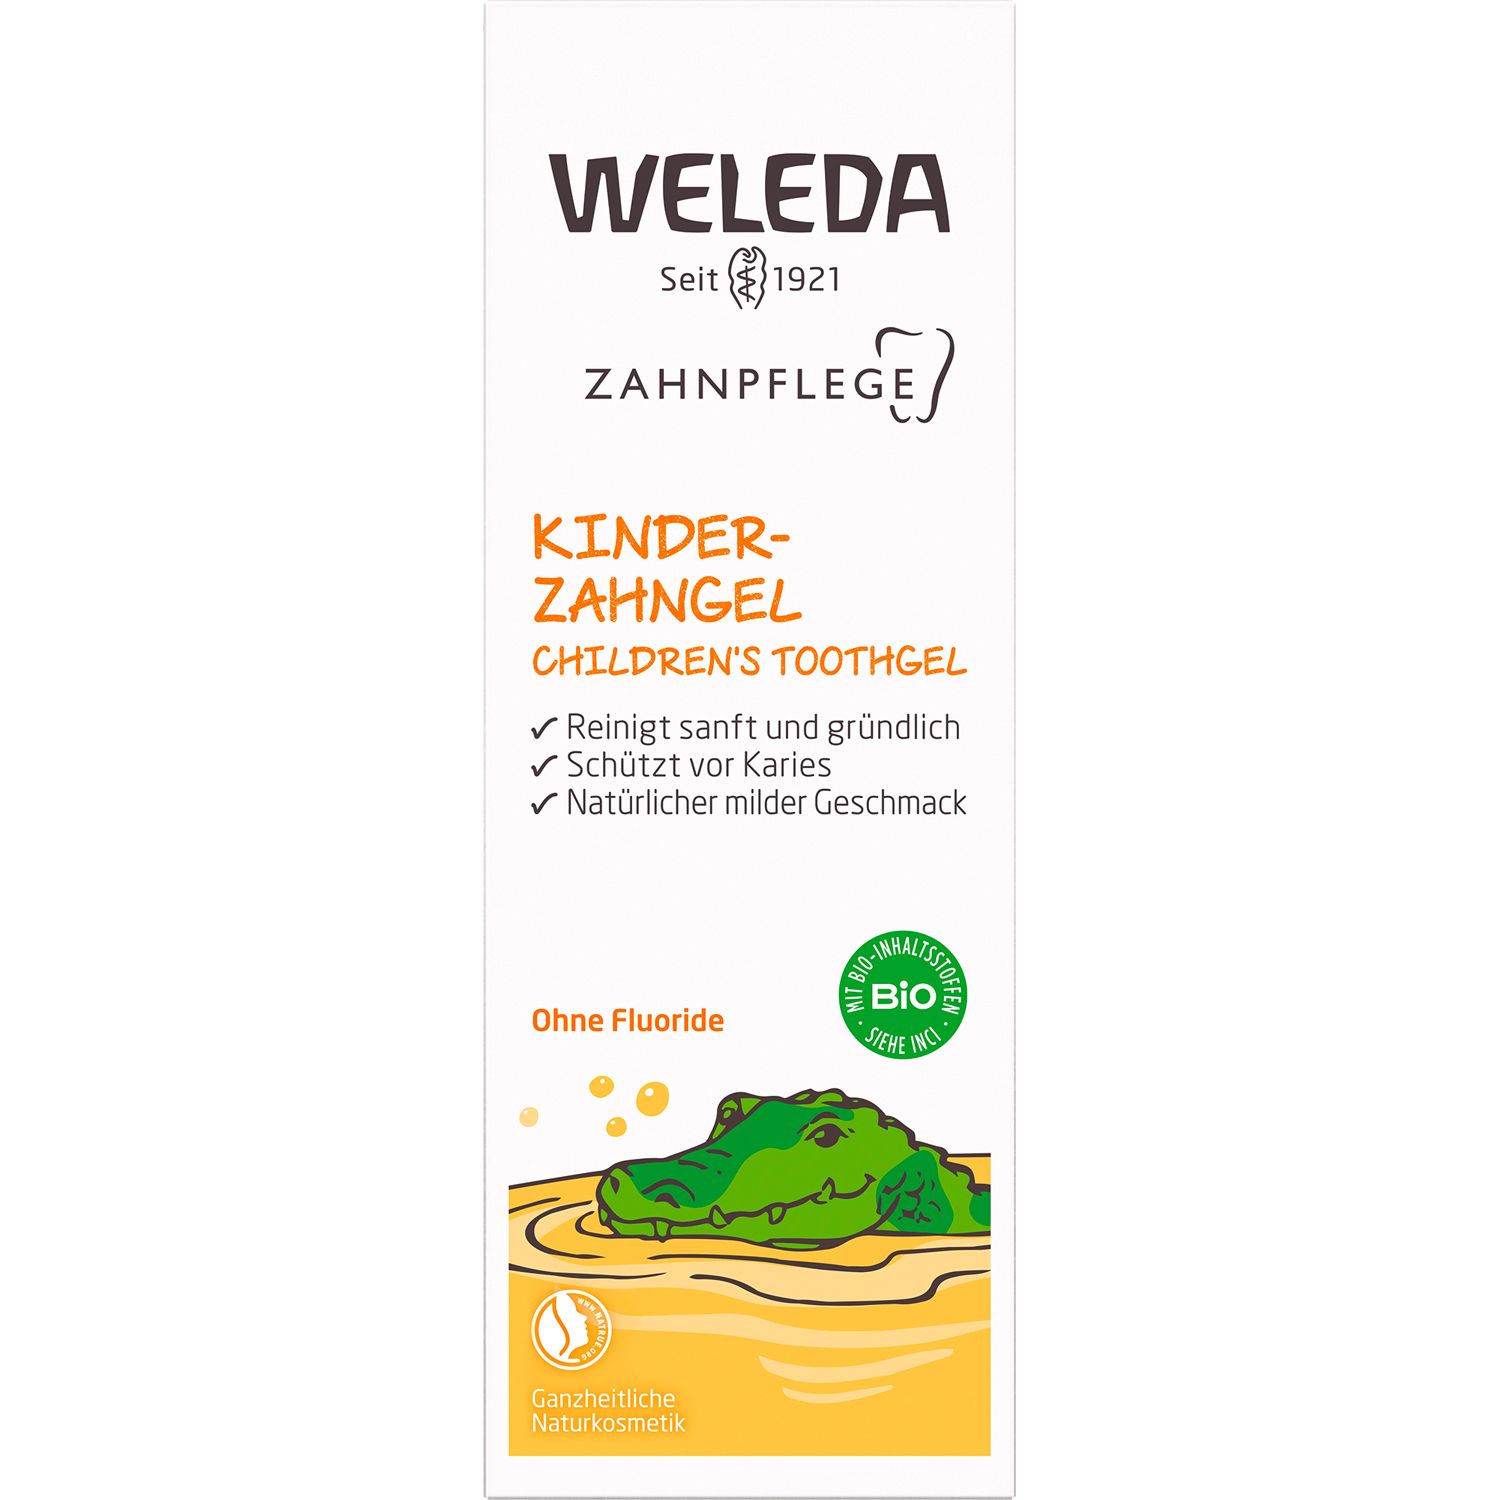 Weleda Kinder-Zahngel - natürliche Kariesprophylaxe für die Milchzähne, enthält keine Fluoride